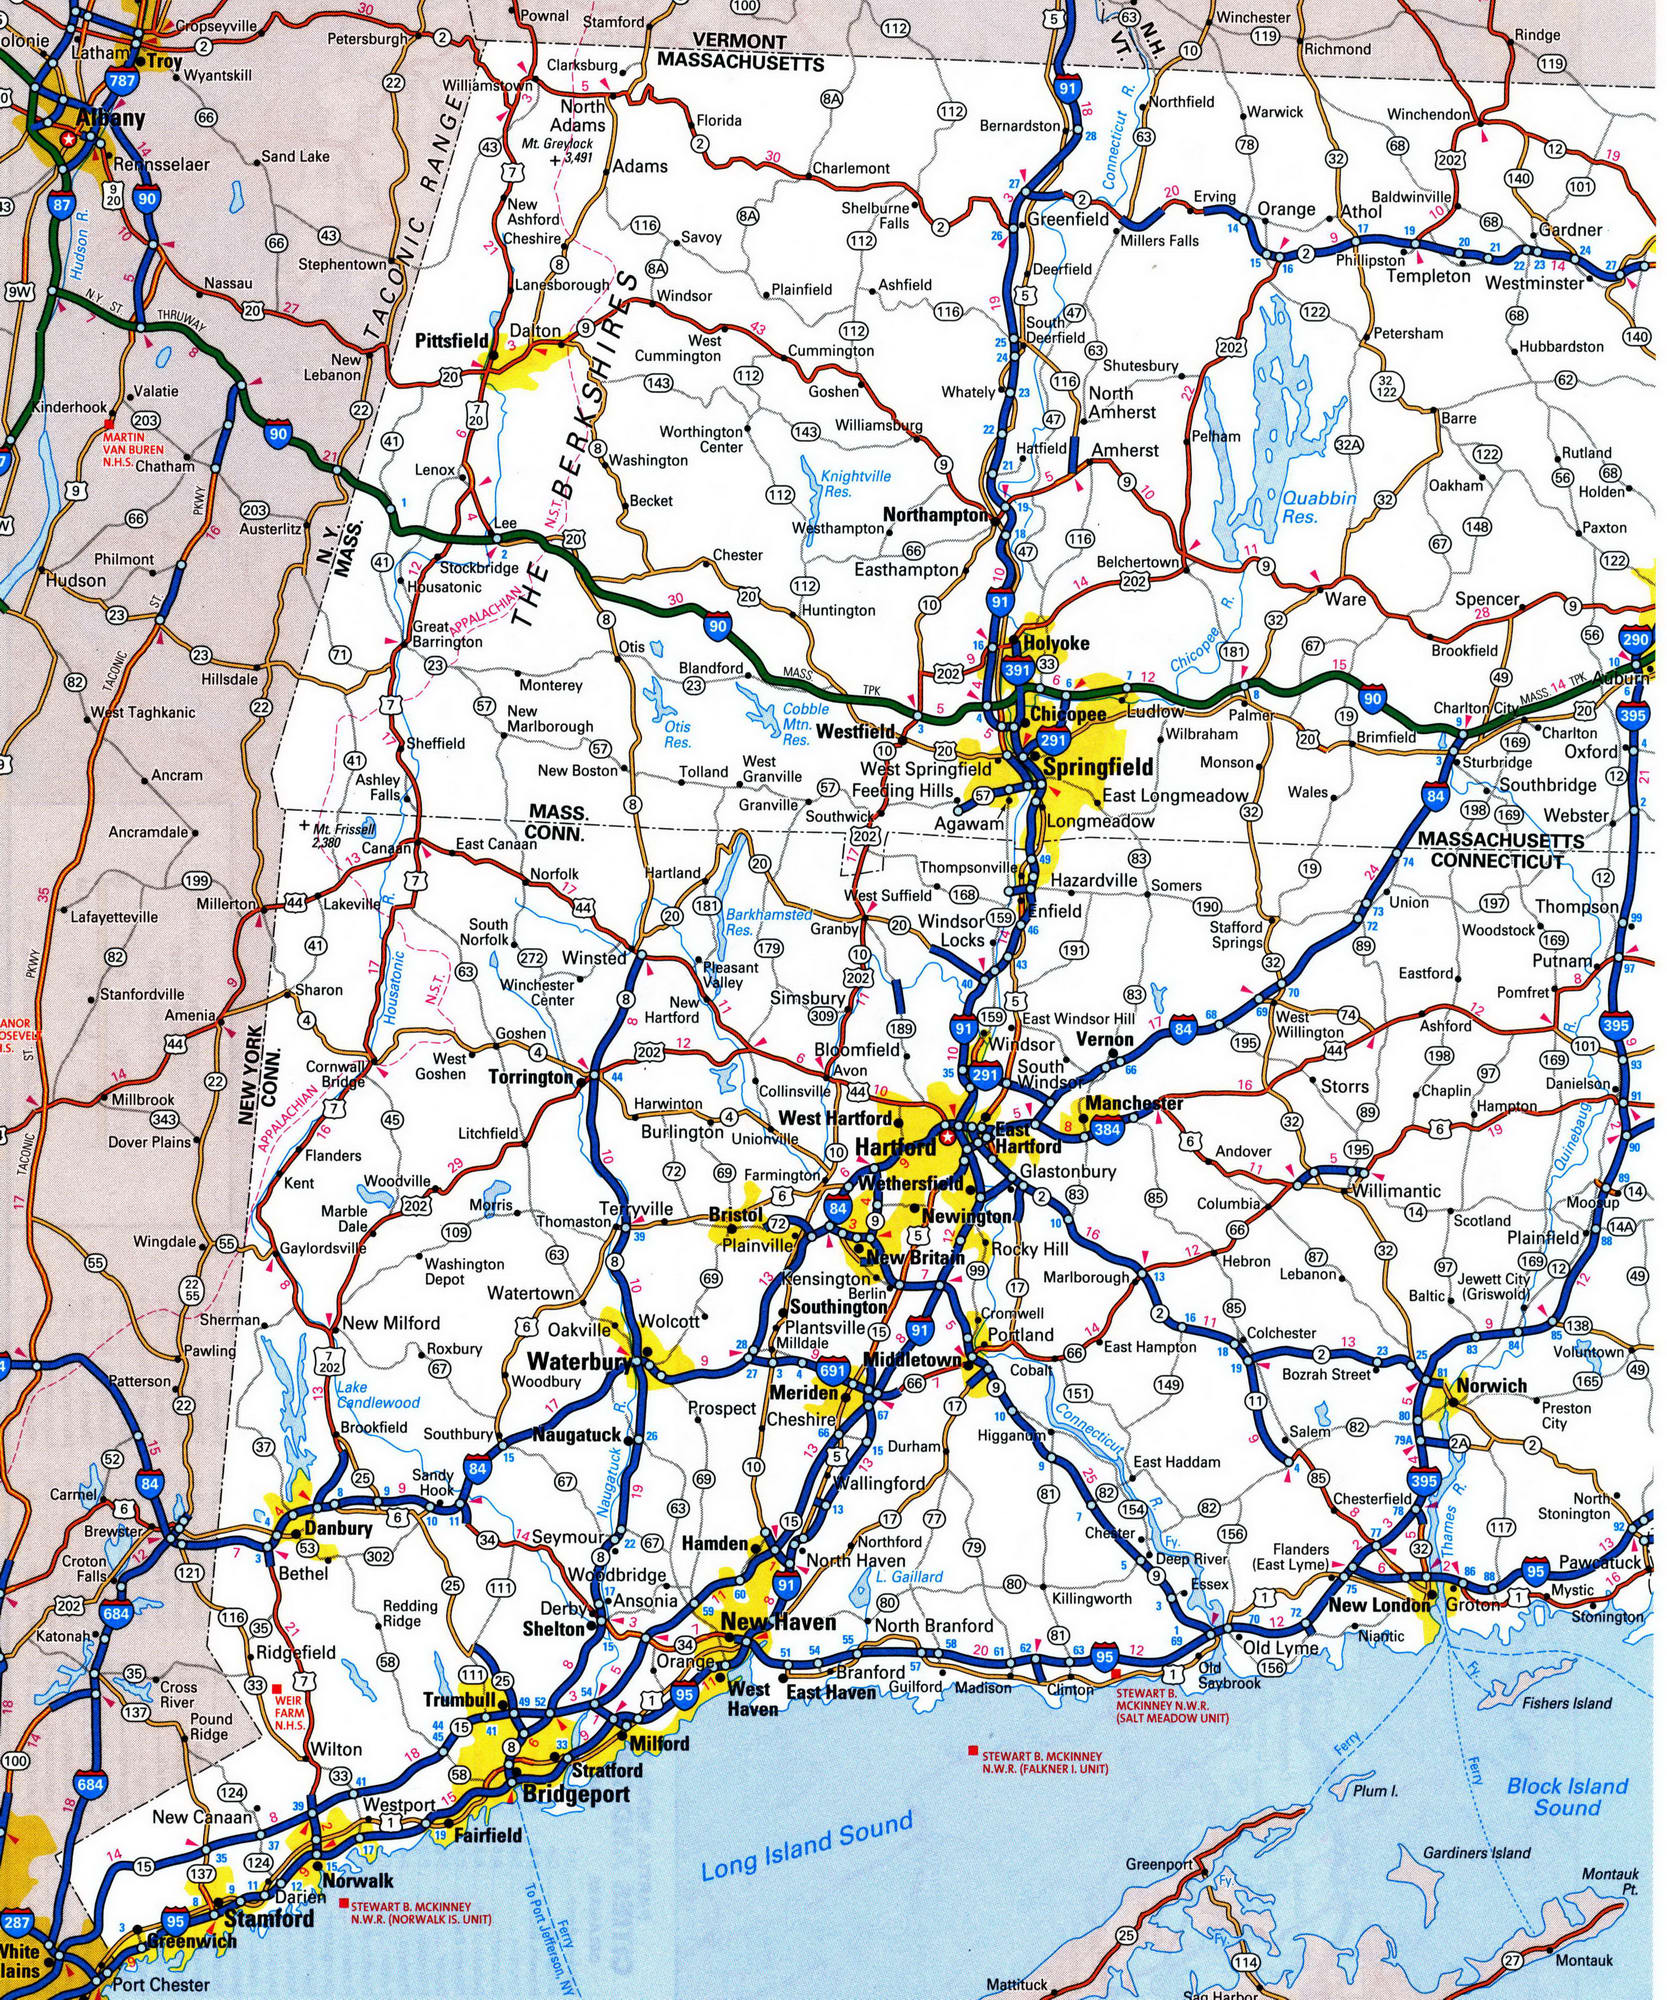 Detailed roads map of Massachusetts